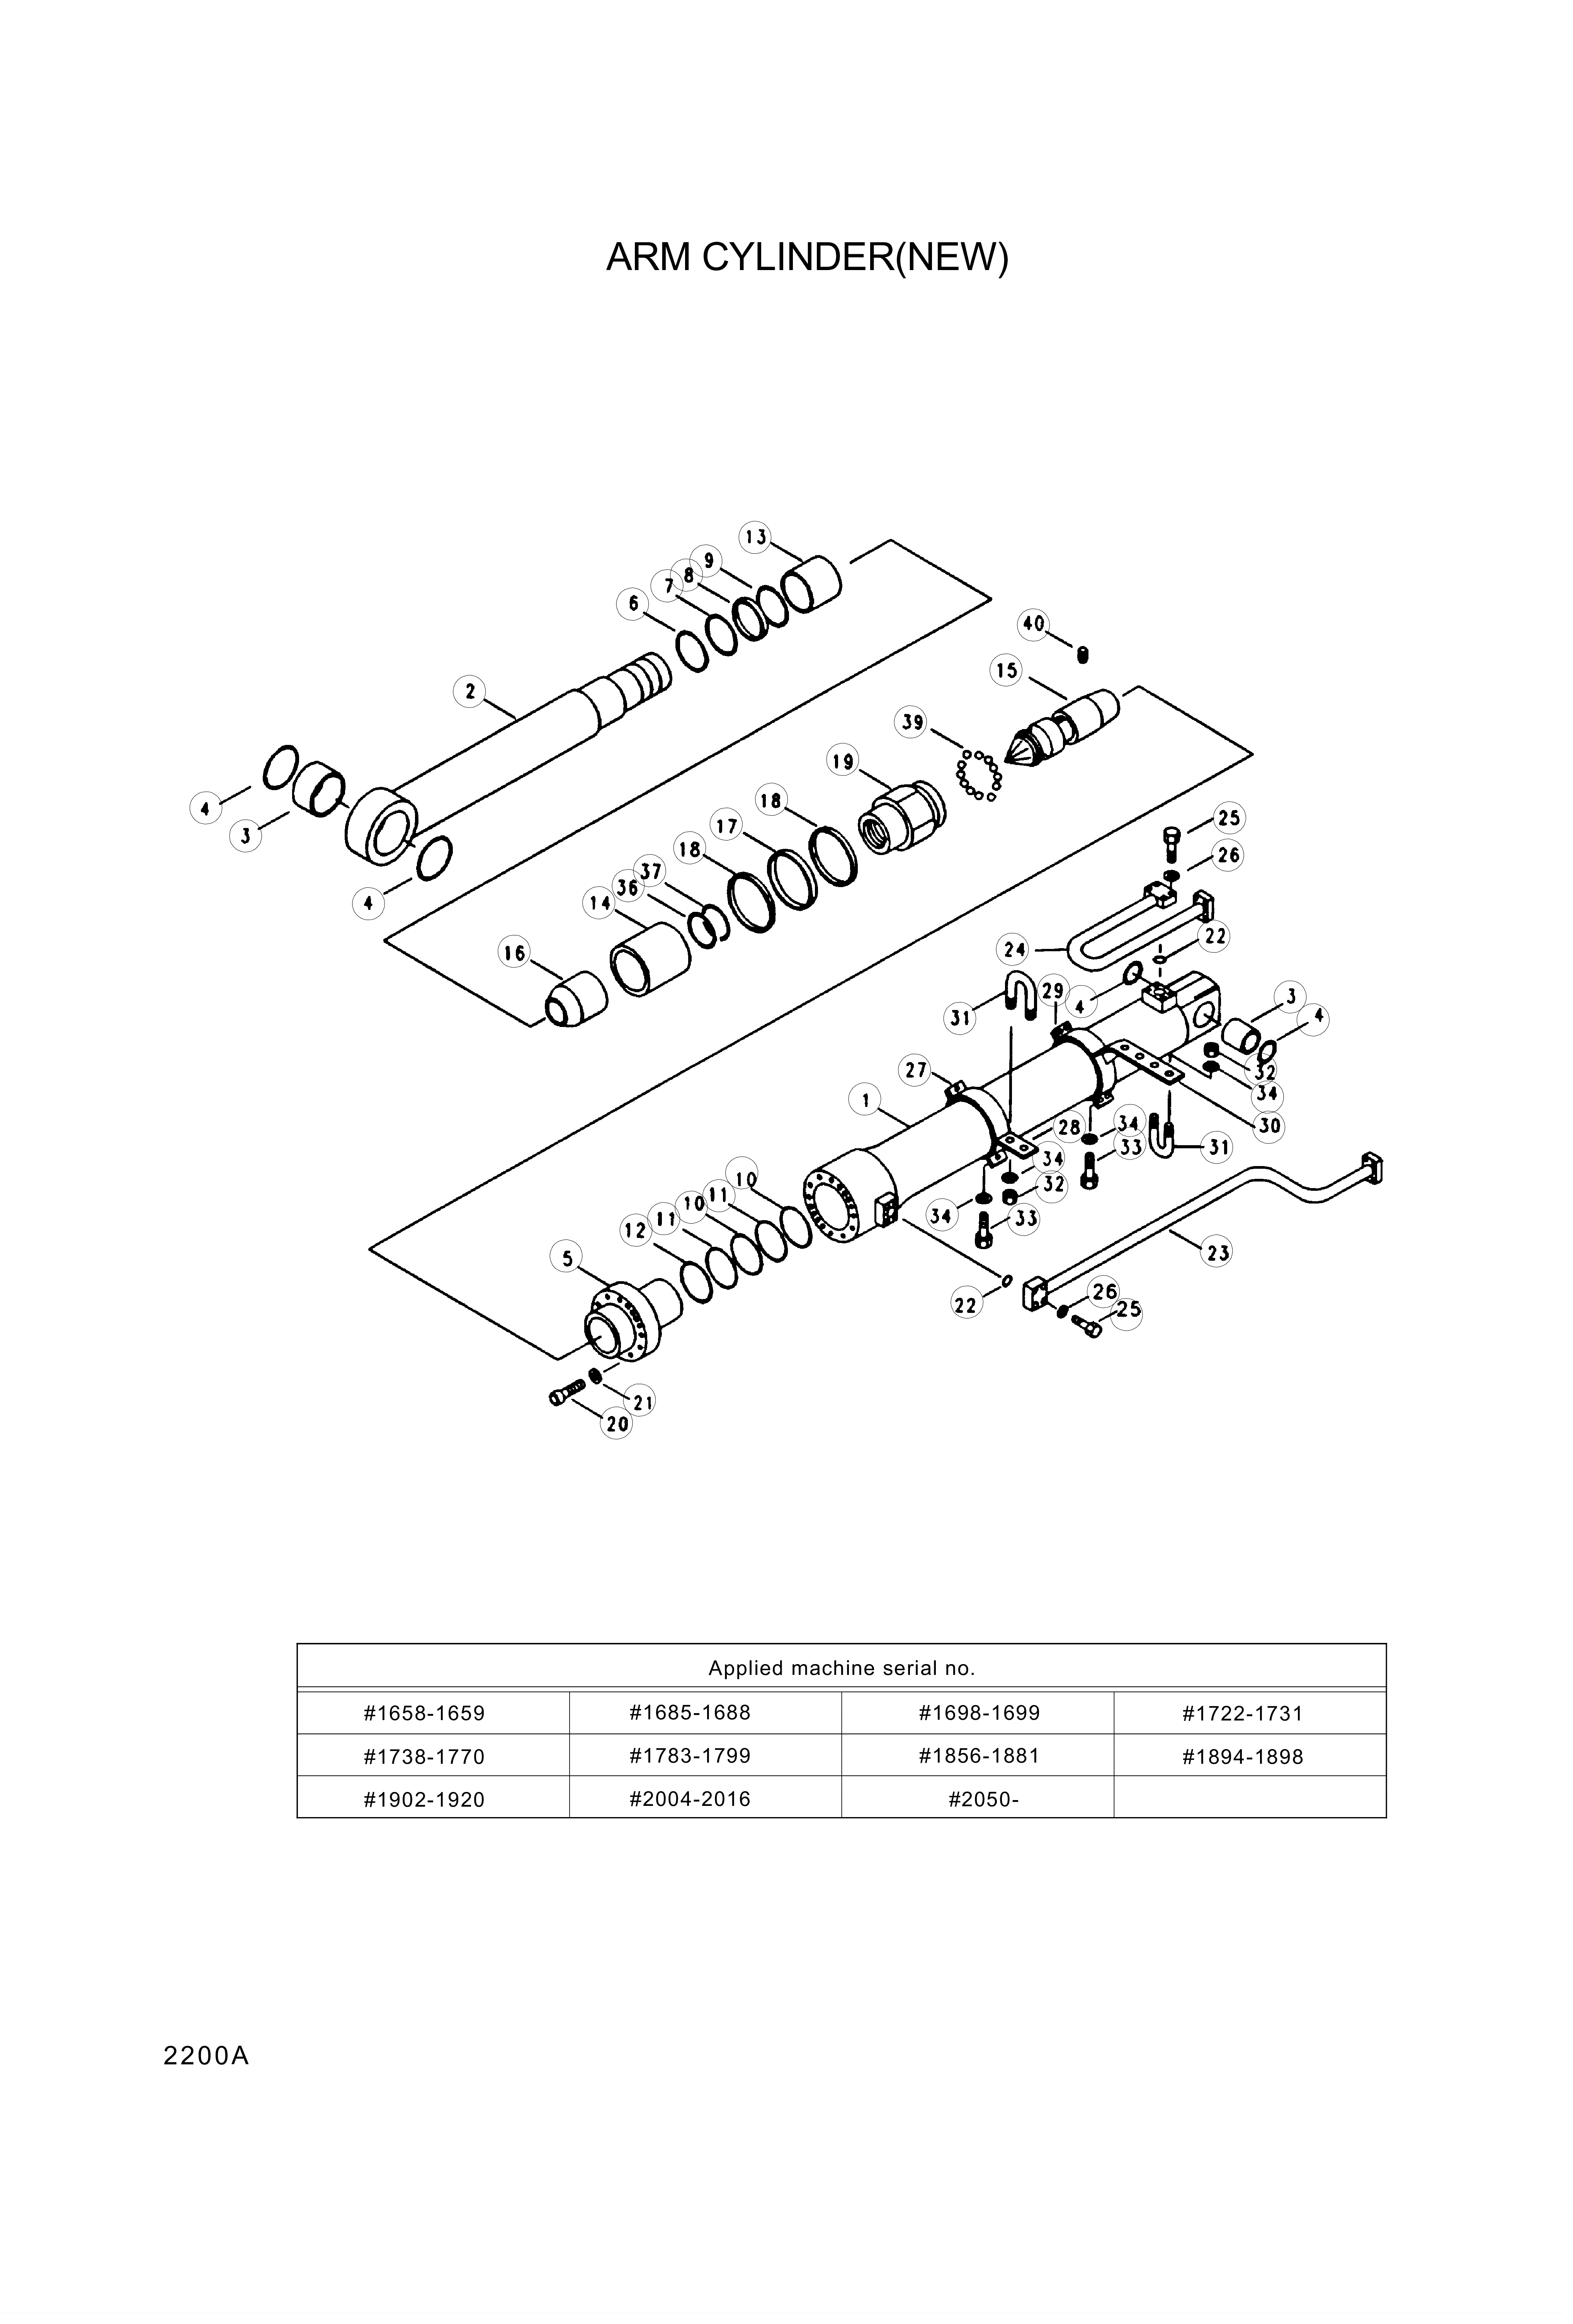 drawing for Hyundai Construction Equipment 000159 - PIN-BUSH (figure 4)